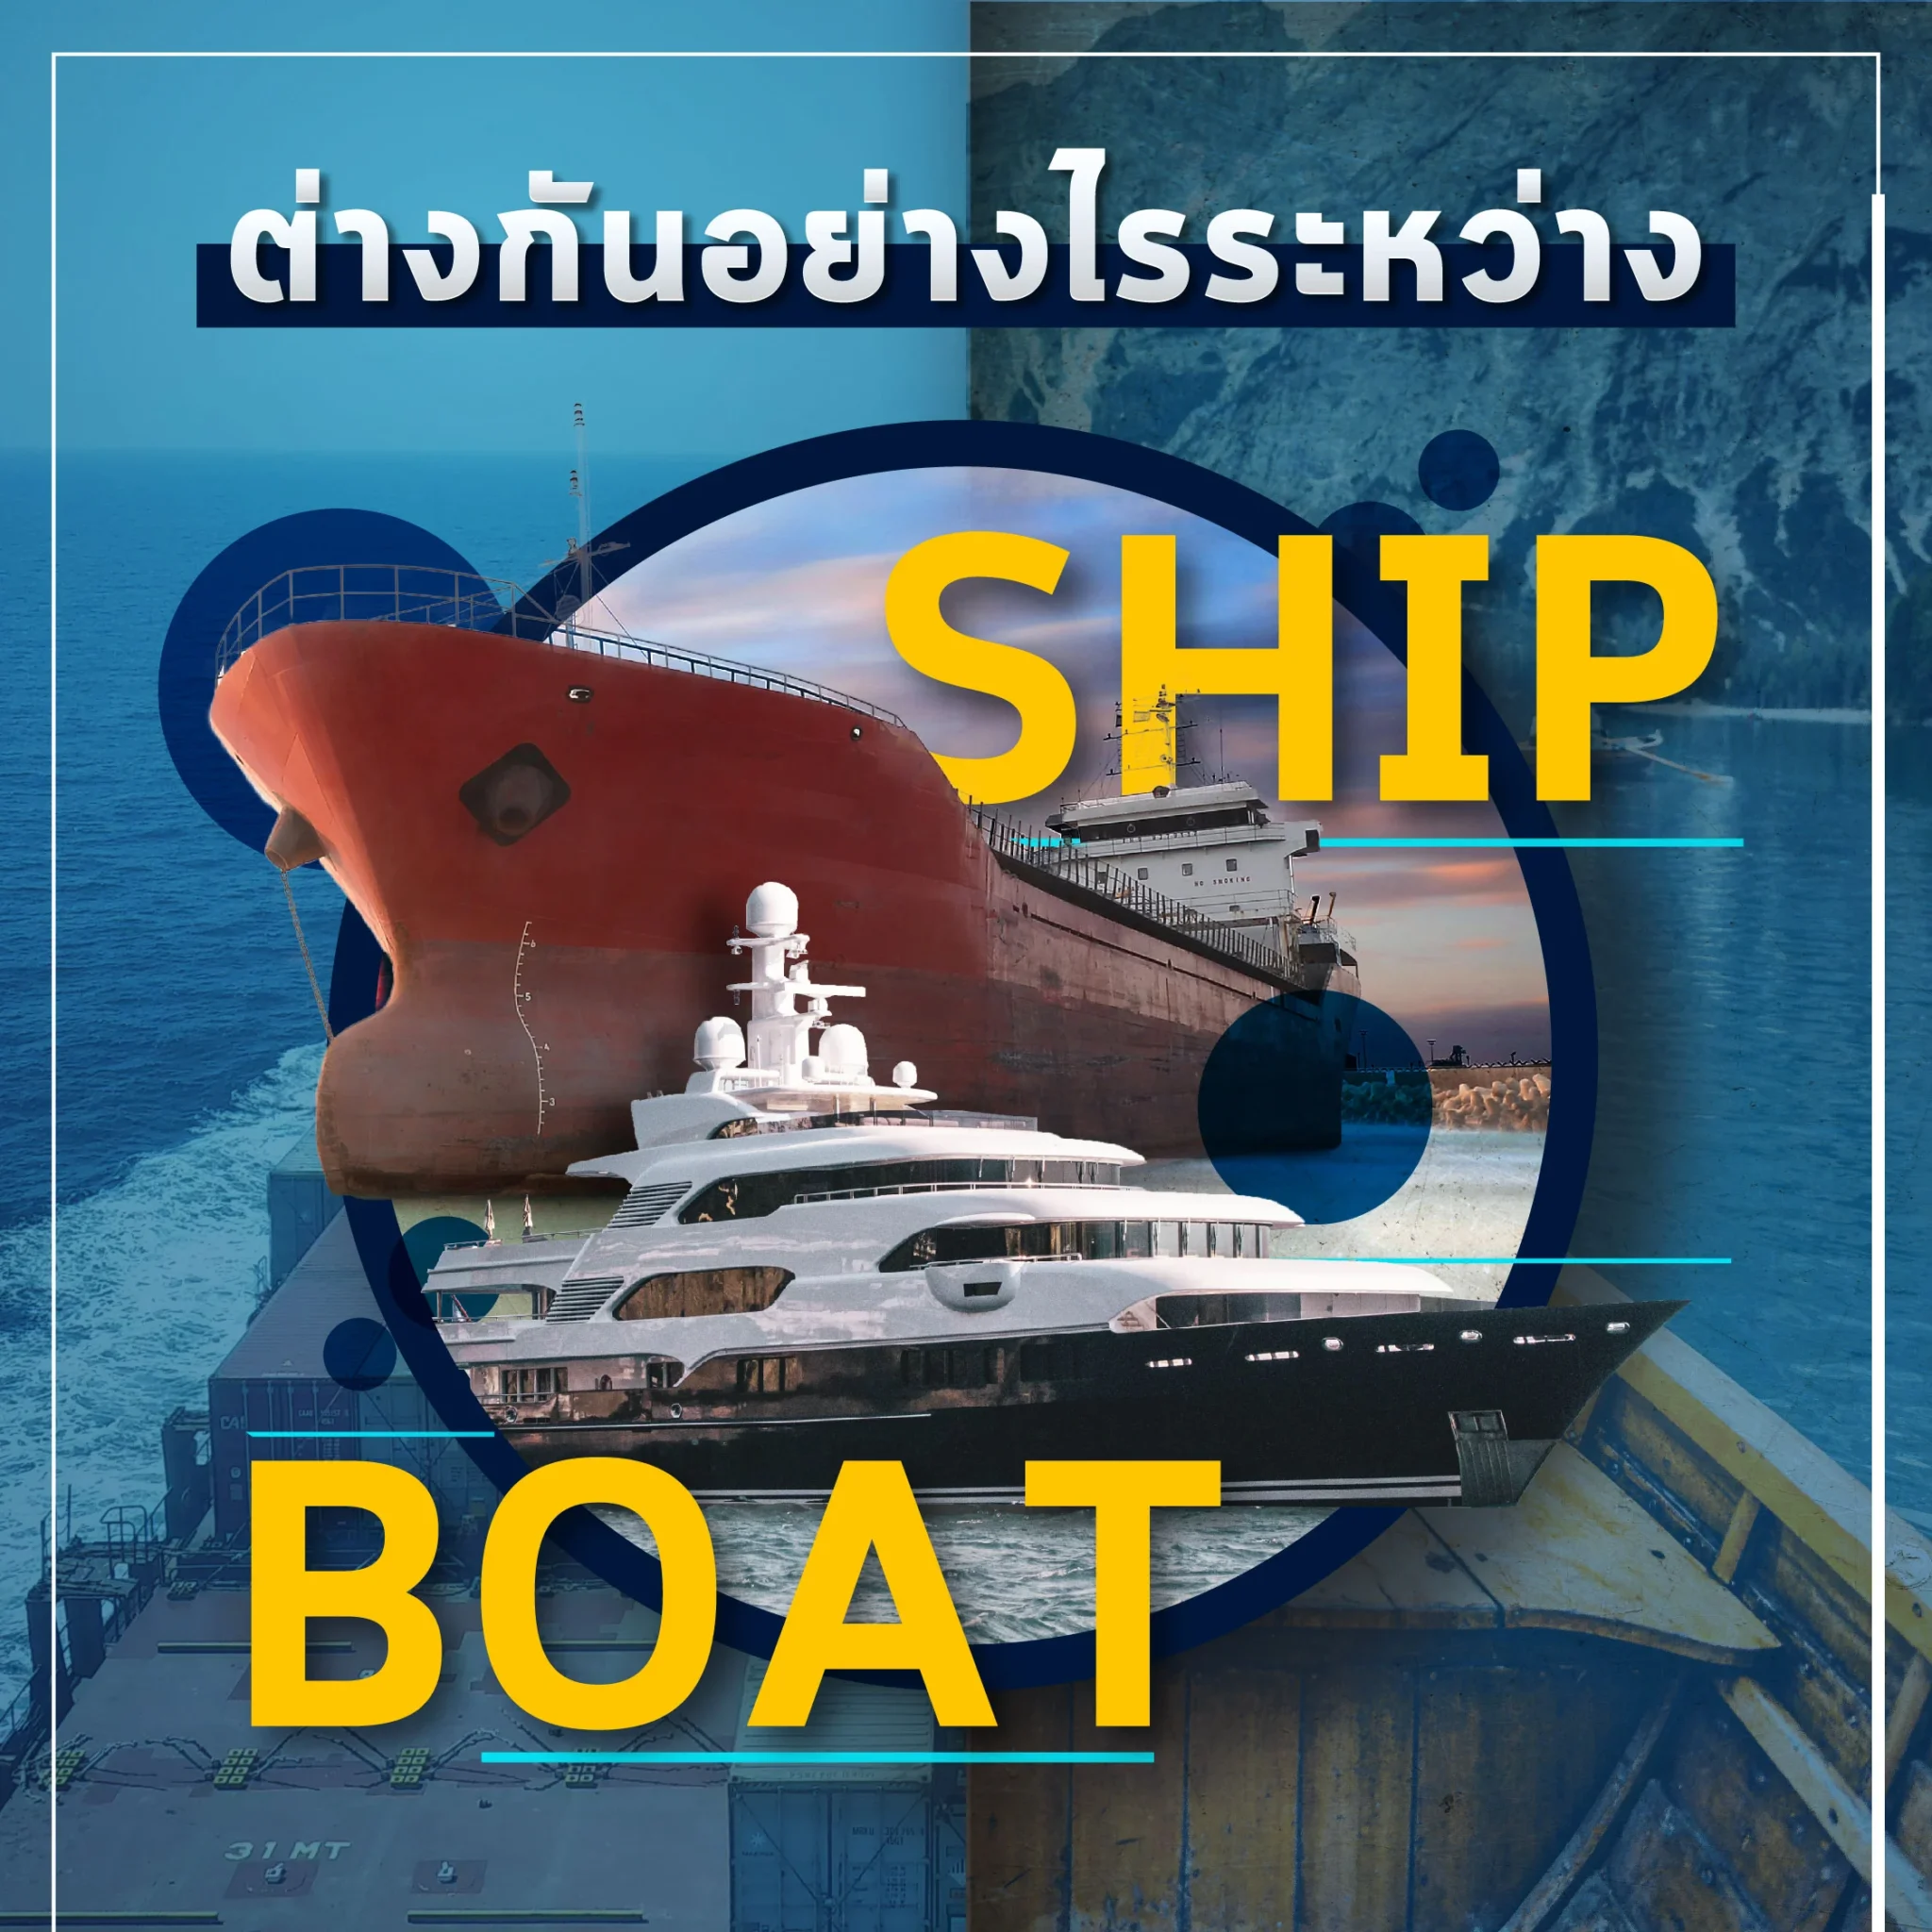 จะ SHIP BOAT ก็แปลว่า “เรือ” แล้วมันต่างกันยังไง?